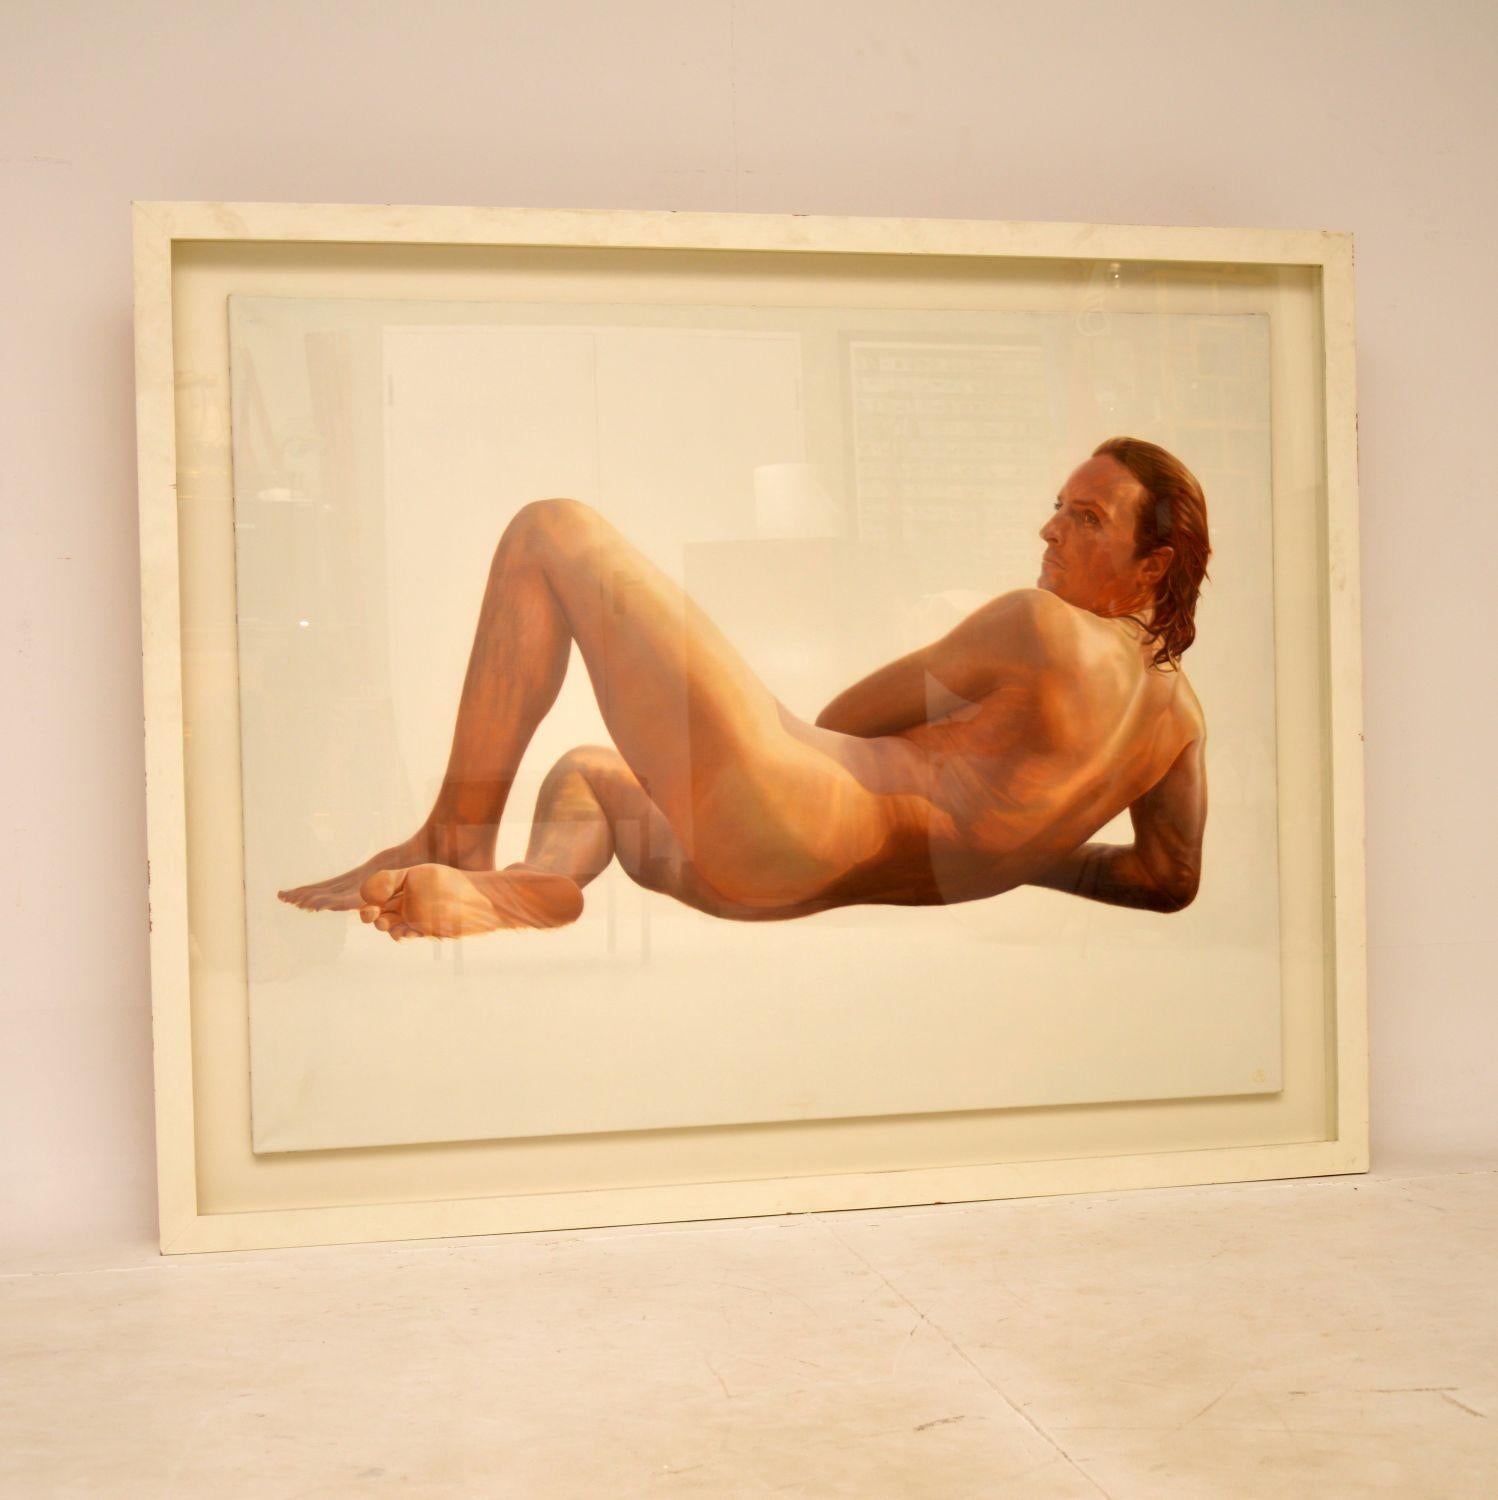 Une grande et impressionnante peinture à l'huile d'un nu masculin, par le célèbre artiste britannique Alan Brassington. Elle date de la fin du 20e siècle.

Alan Brassington est spécialisé dans les portraits et la peinture de chevaux. Il est